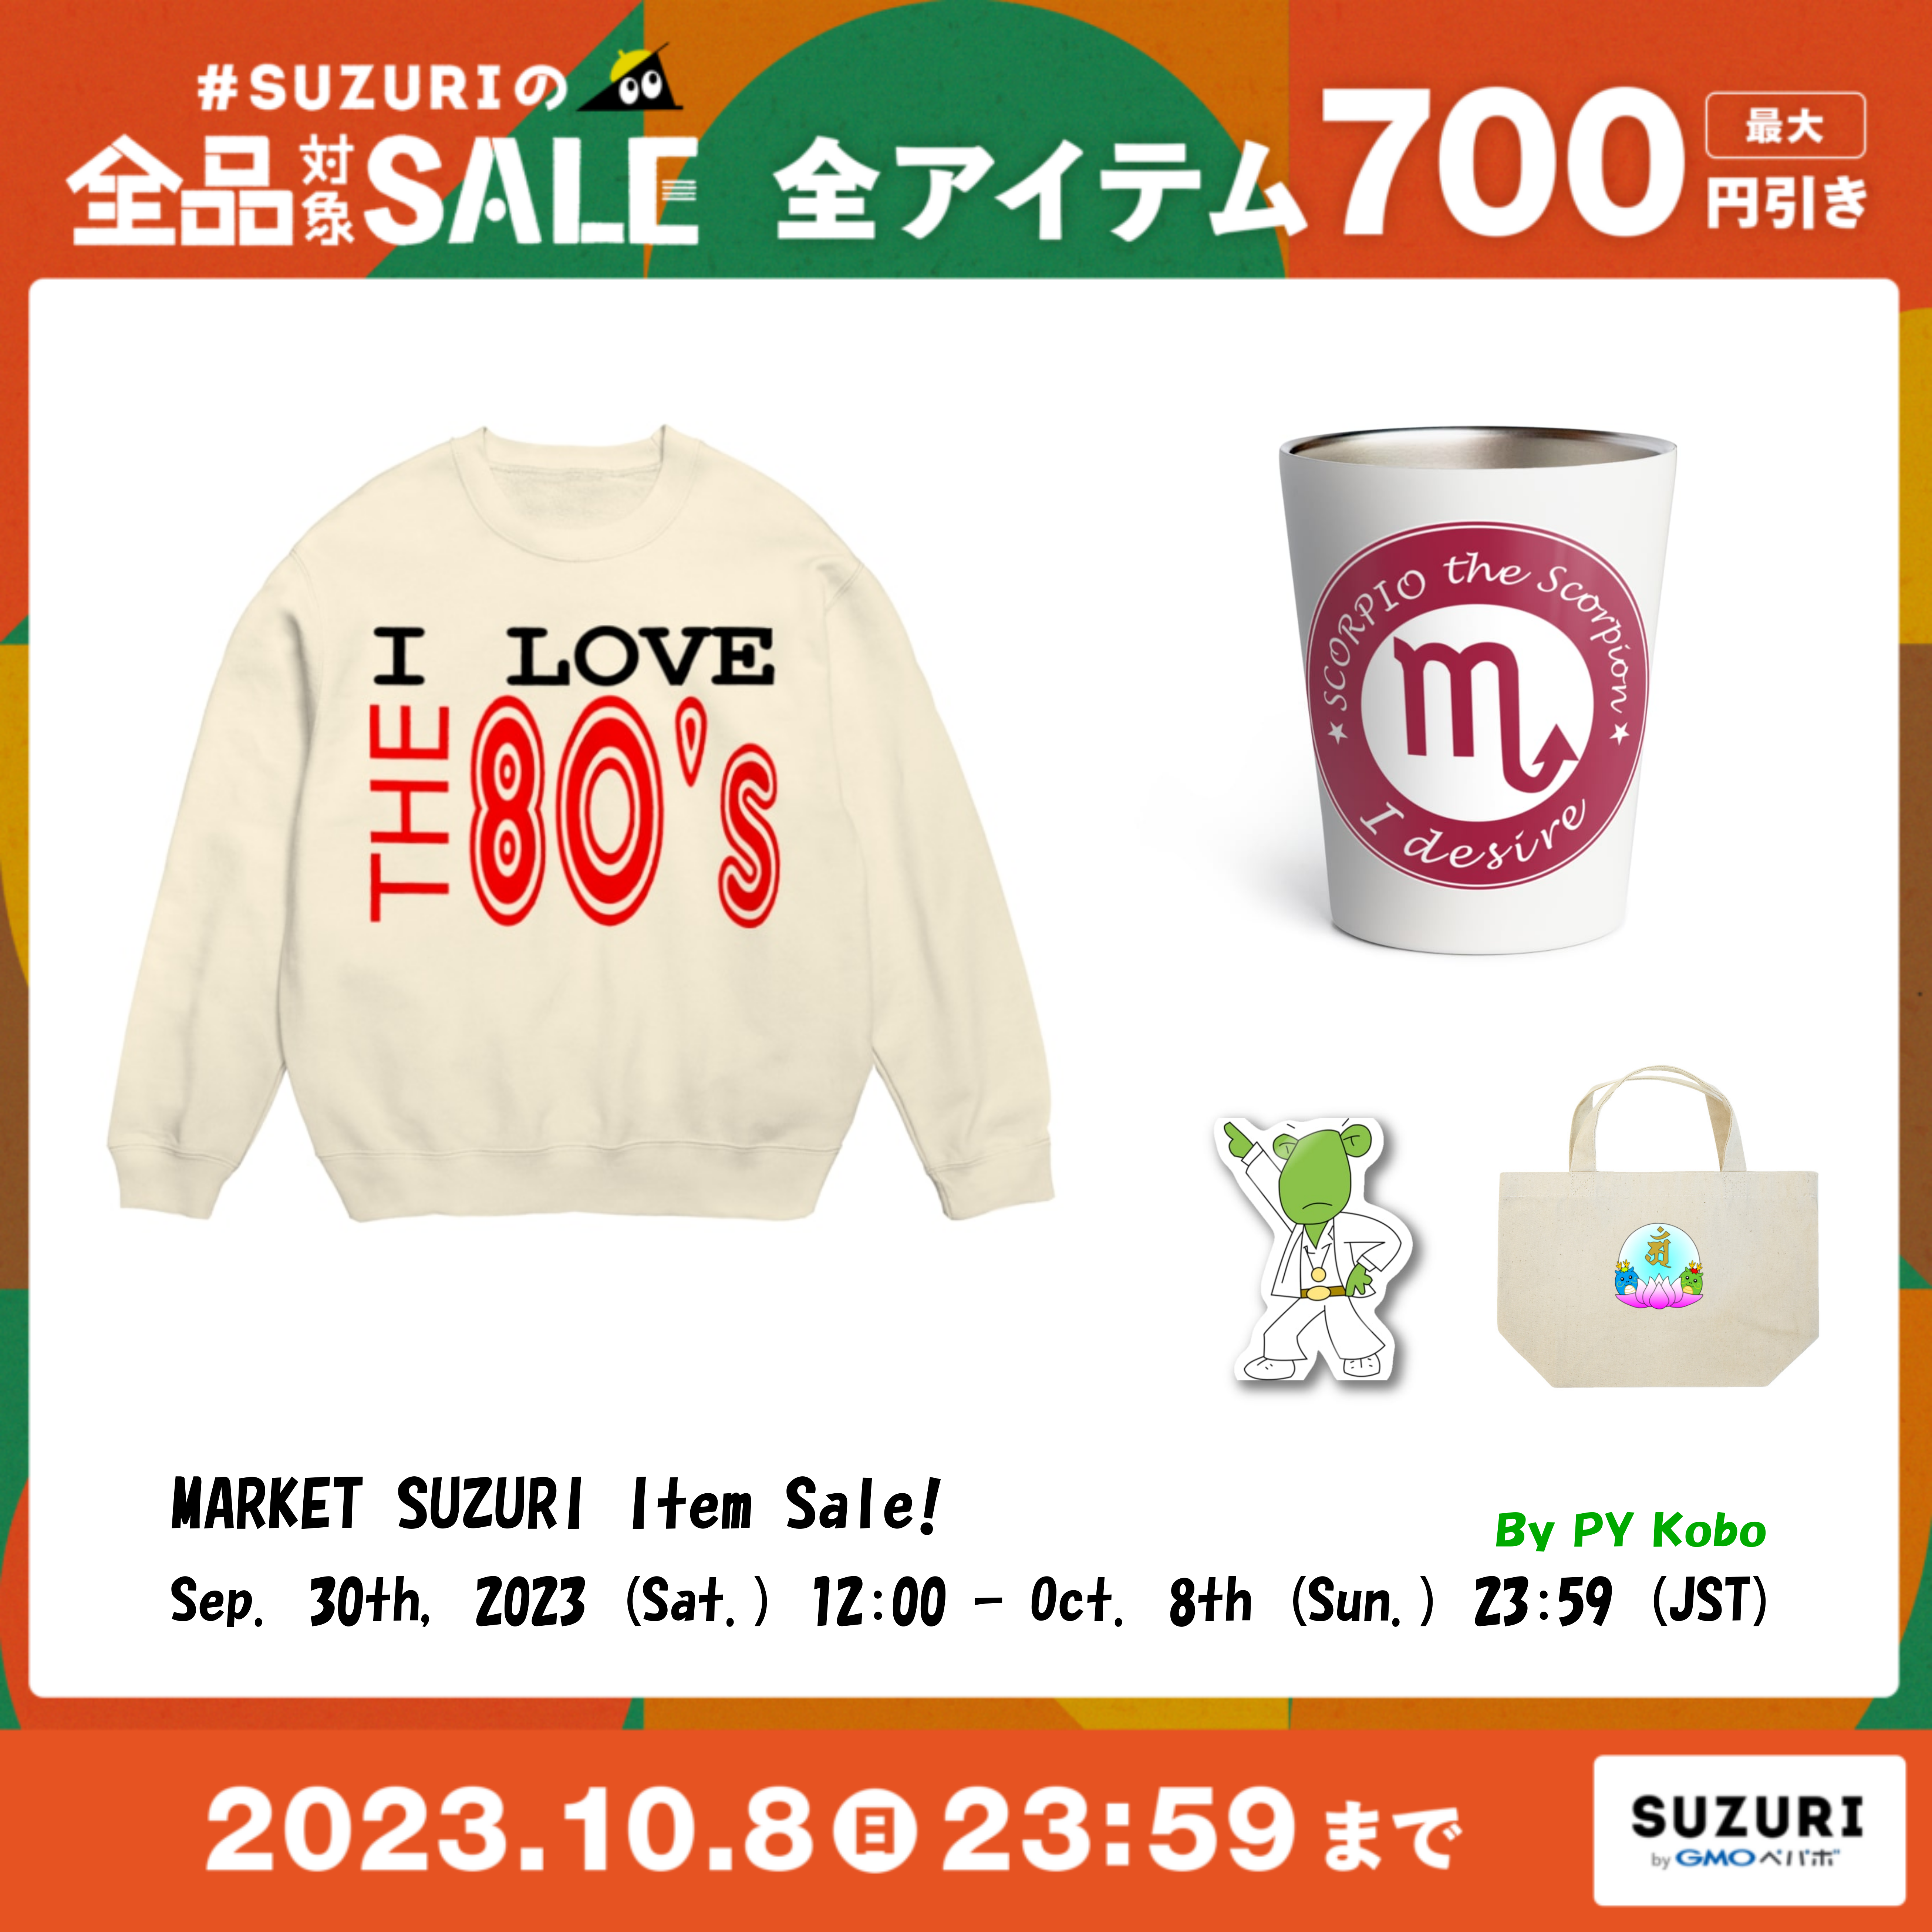 202310-suzuri-items-sale-banner02